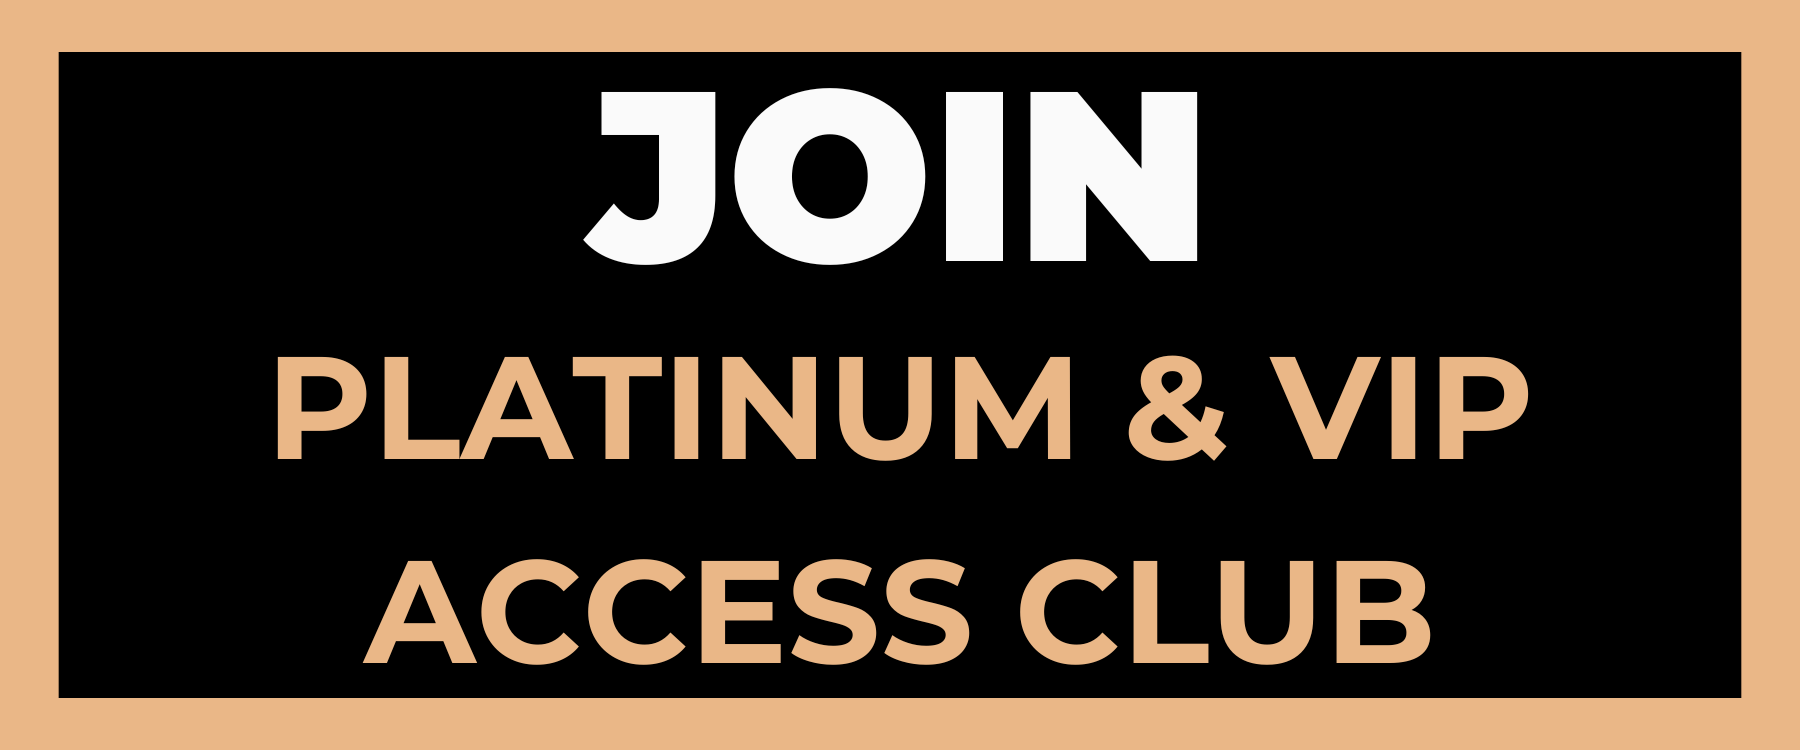 PLATINUM & VIP ACCESS CLUB